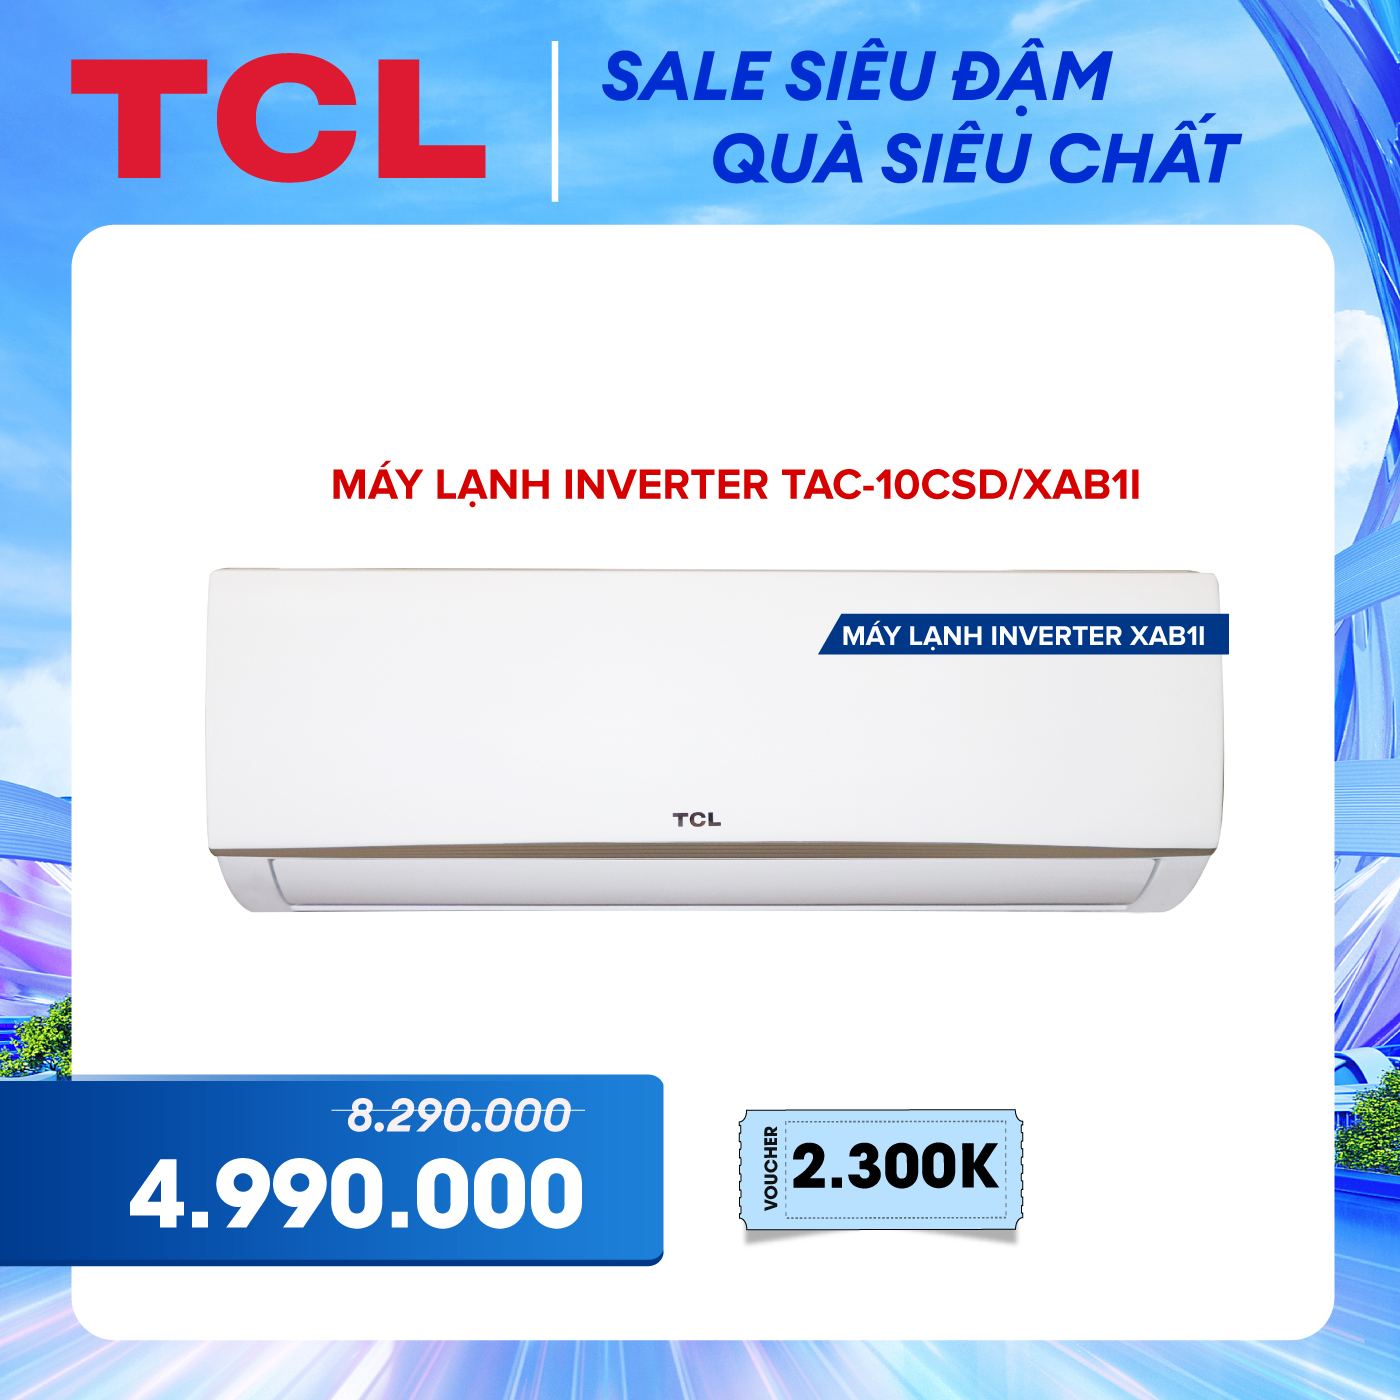 Máy lạnh TCL Inverter 1 HP TAC-10CSD/XAB1I - Hàng chính hãng - Bảo hành 3 năm